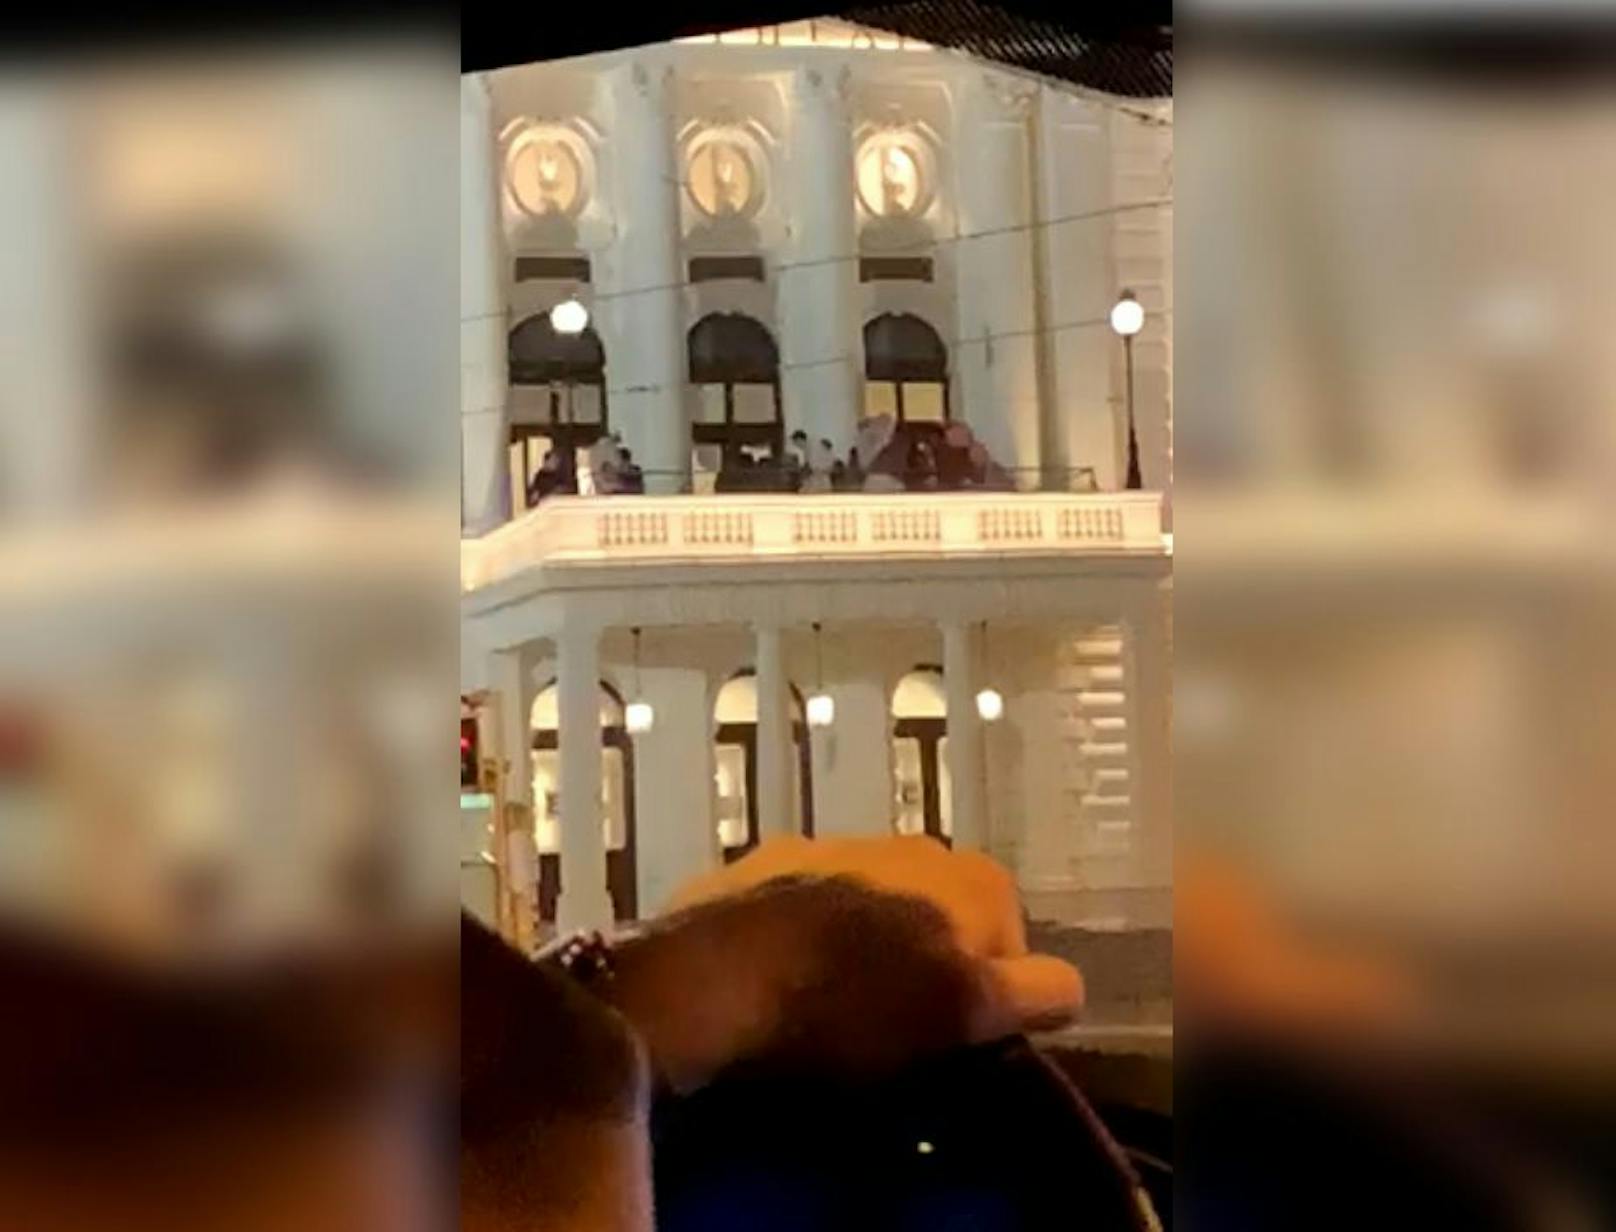 Eine Wienerin entdeckte die Personen am beleuchteten Balkon.